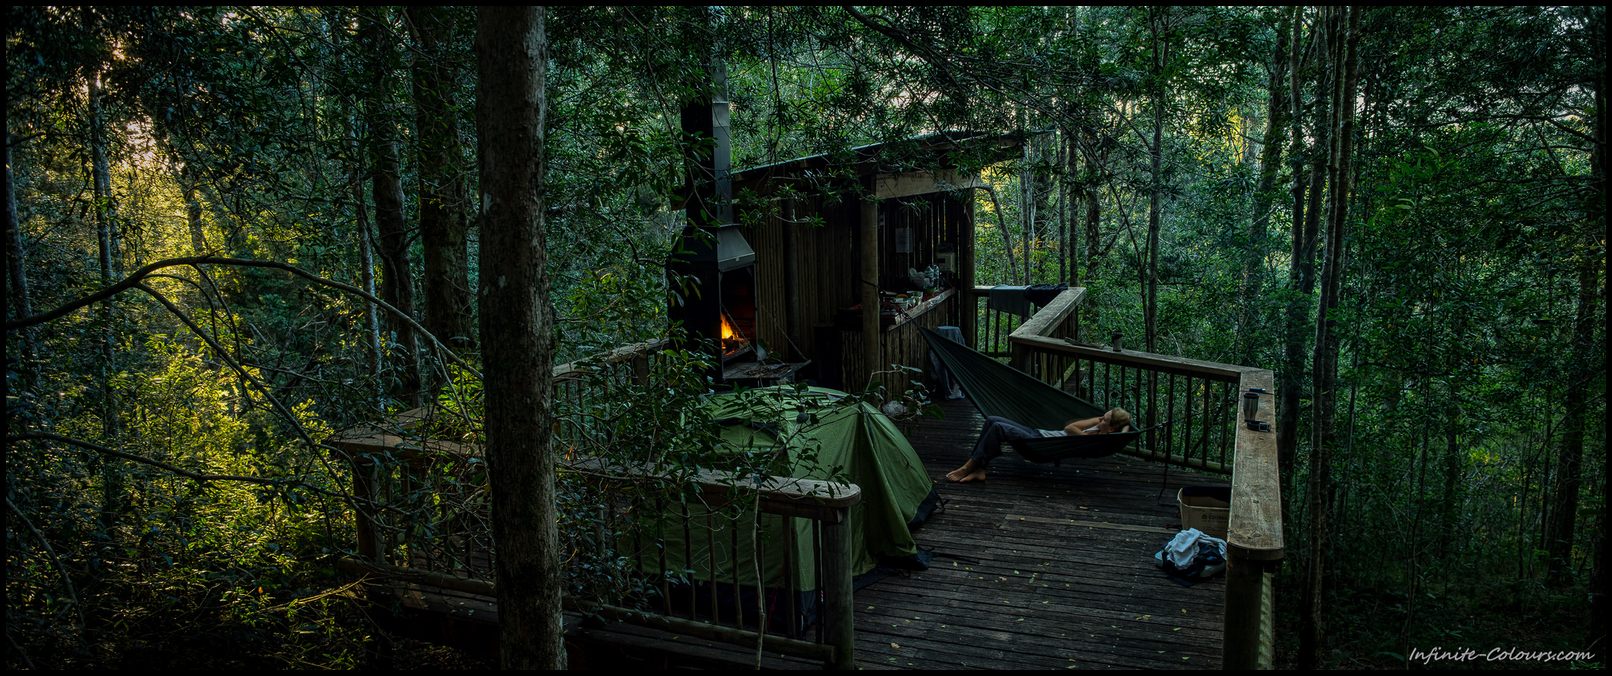 Diepwalle Forest Station Camping Decks